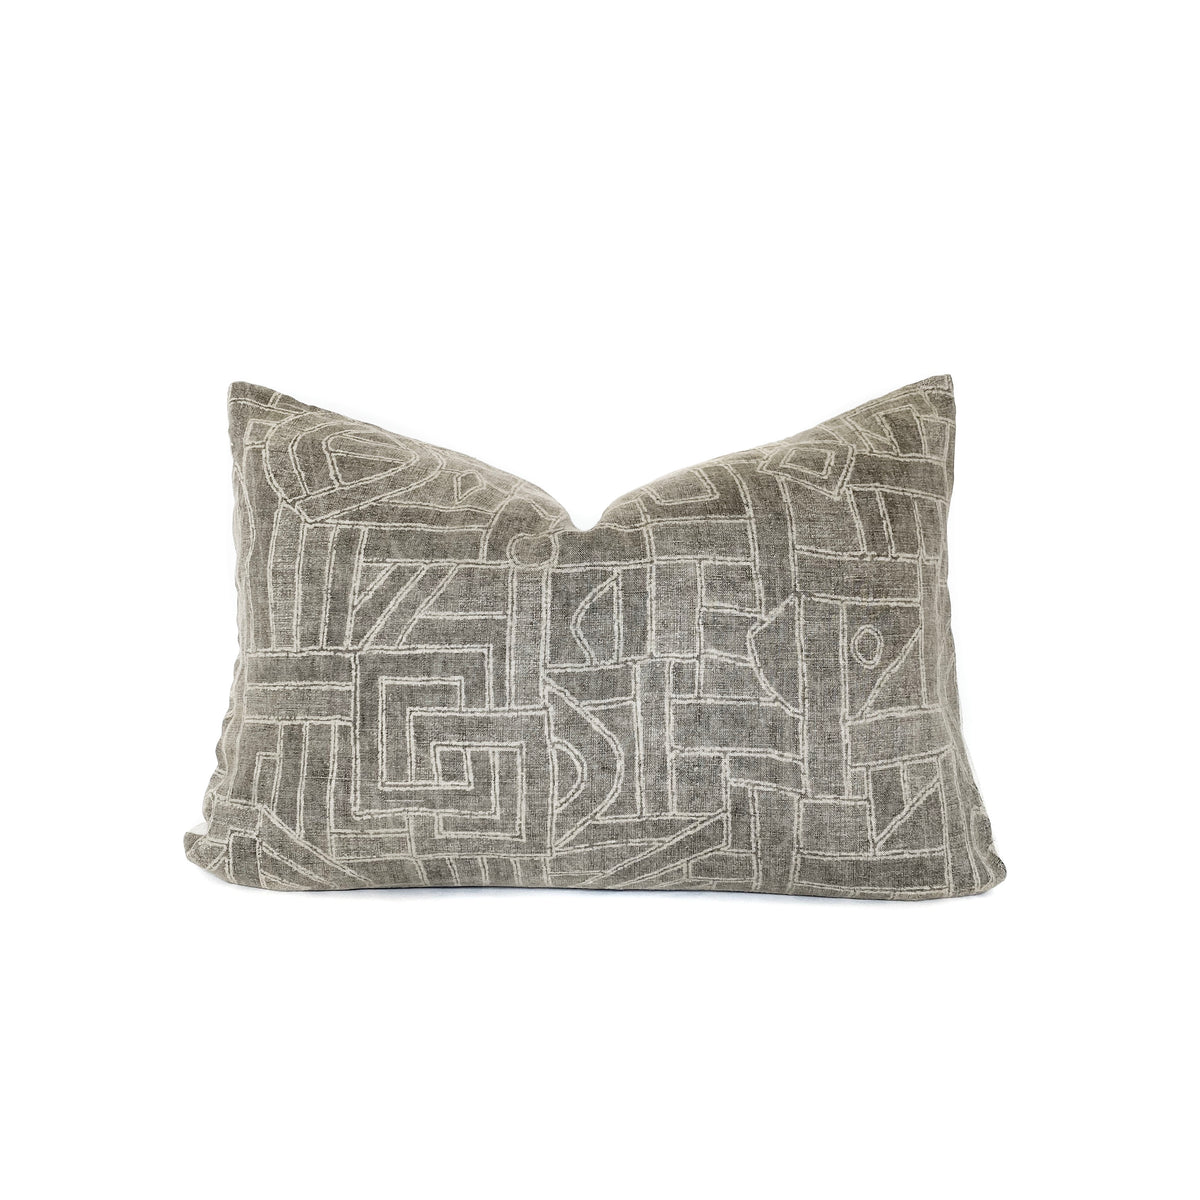 Tye Basalt Designer Pillow Cover